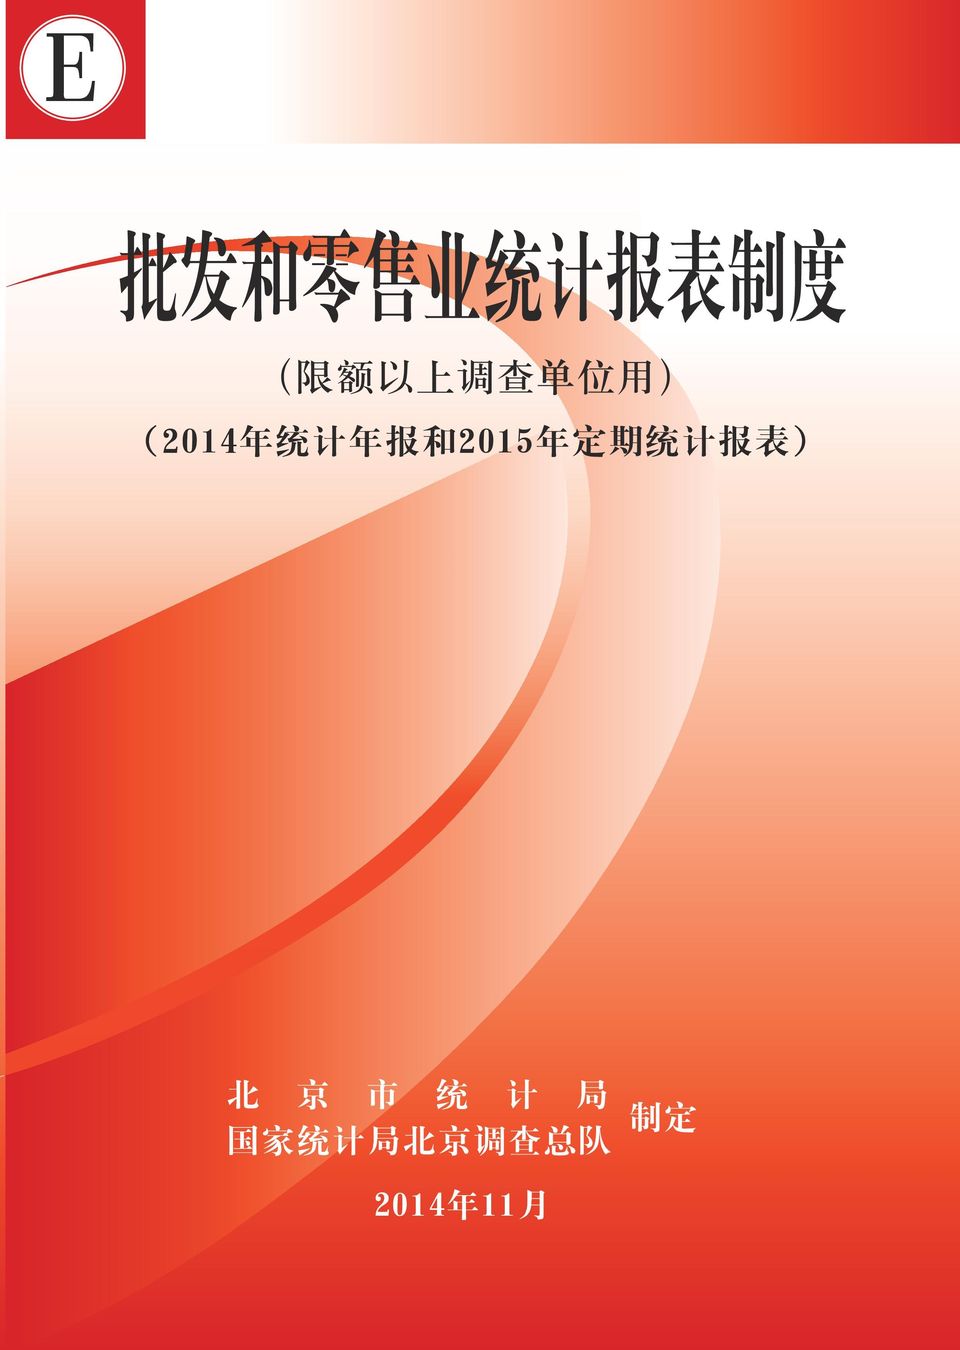 2015 年 定 期 统 计 报 表 ) 北 京 市 统 计 局